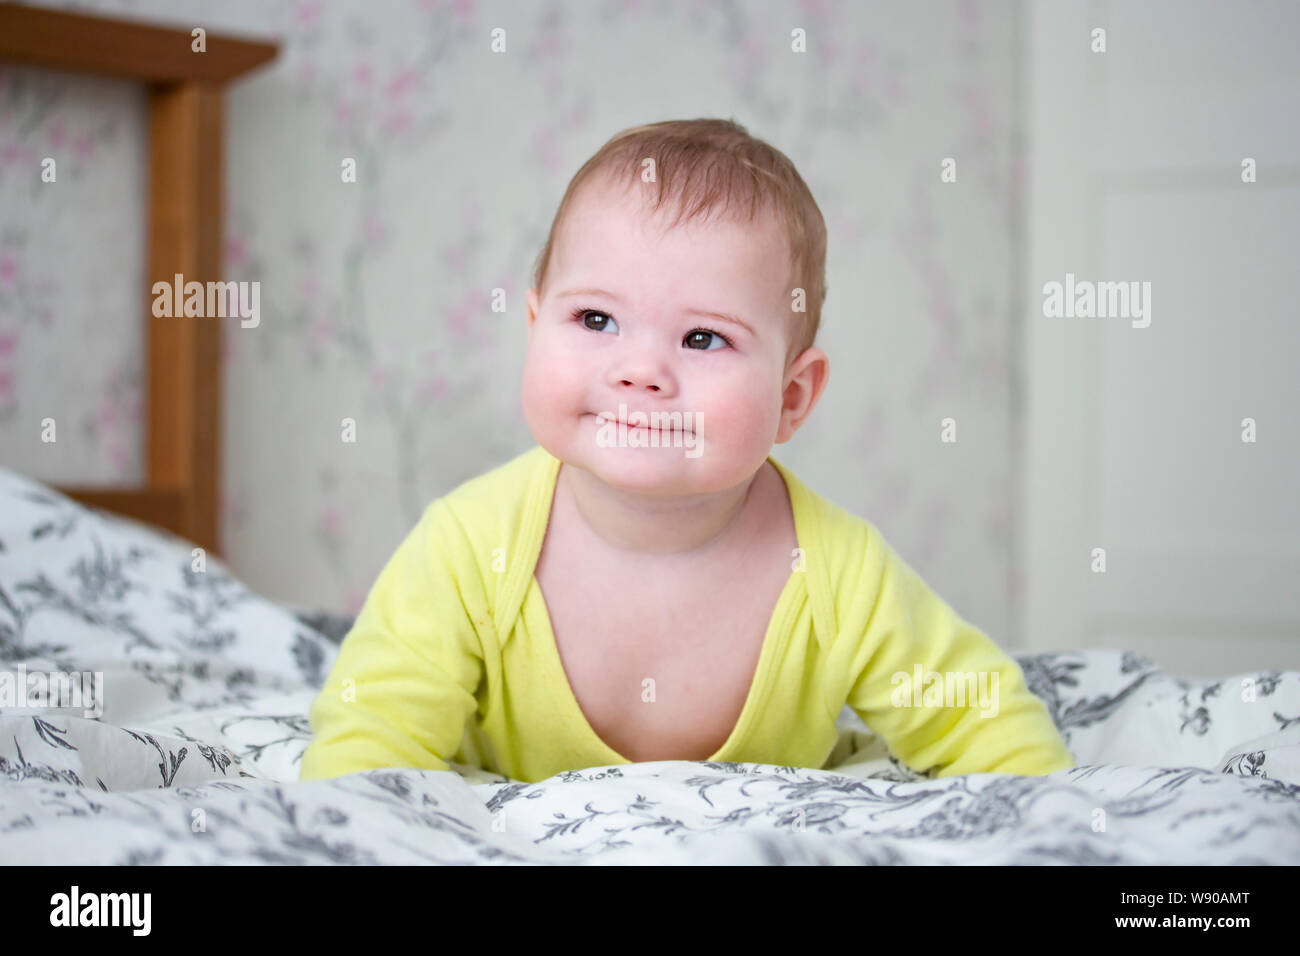 Wenig Europäische 7 Monate Baby Mädchen Jungen in Gelb. Niedliche Kind wirft seinen Körper in seinen Armen, lächelt verschmitzt, Schiele seine Augen, liegt auf dem Bett Stockfoto